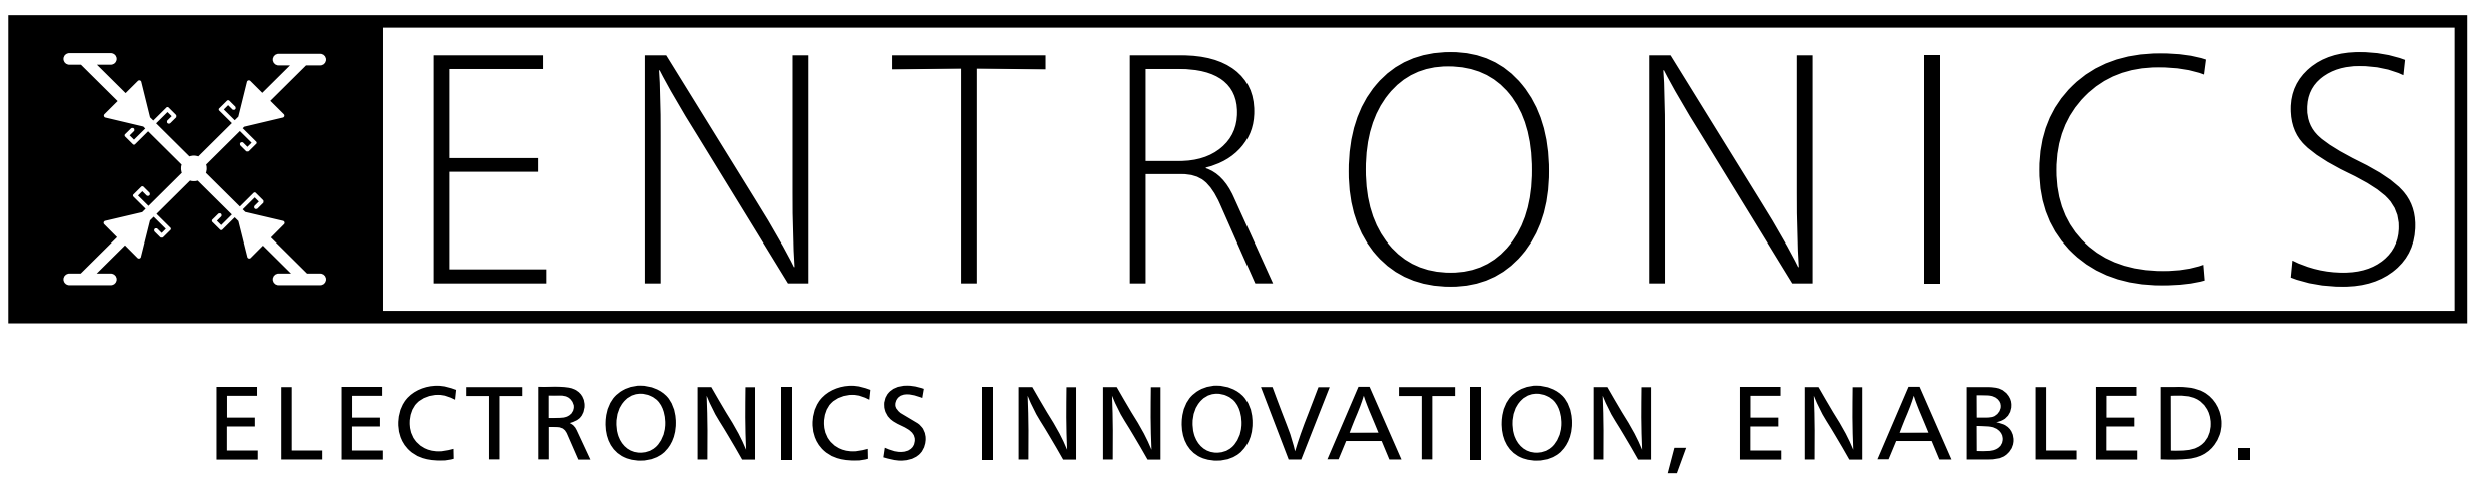 Xentronics logo